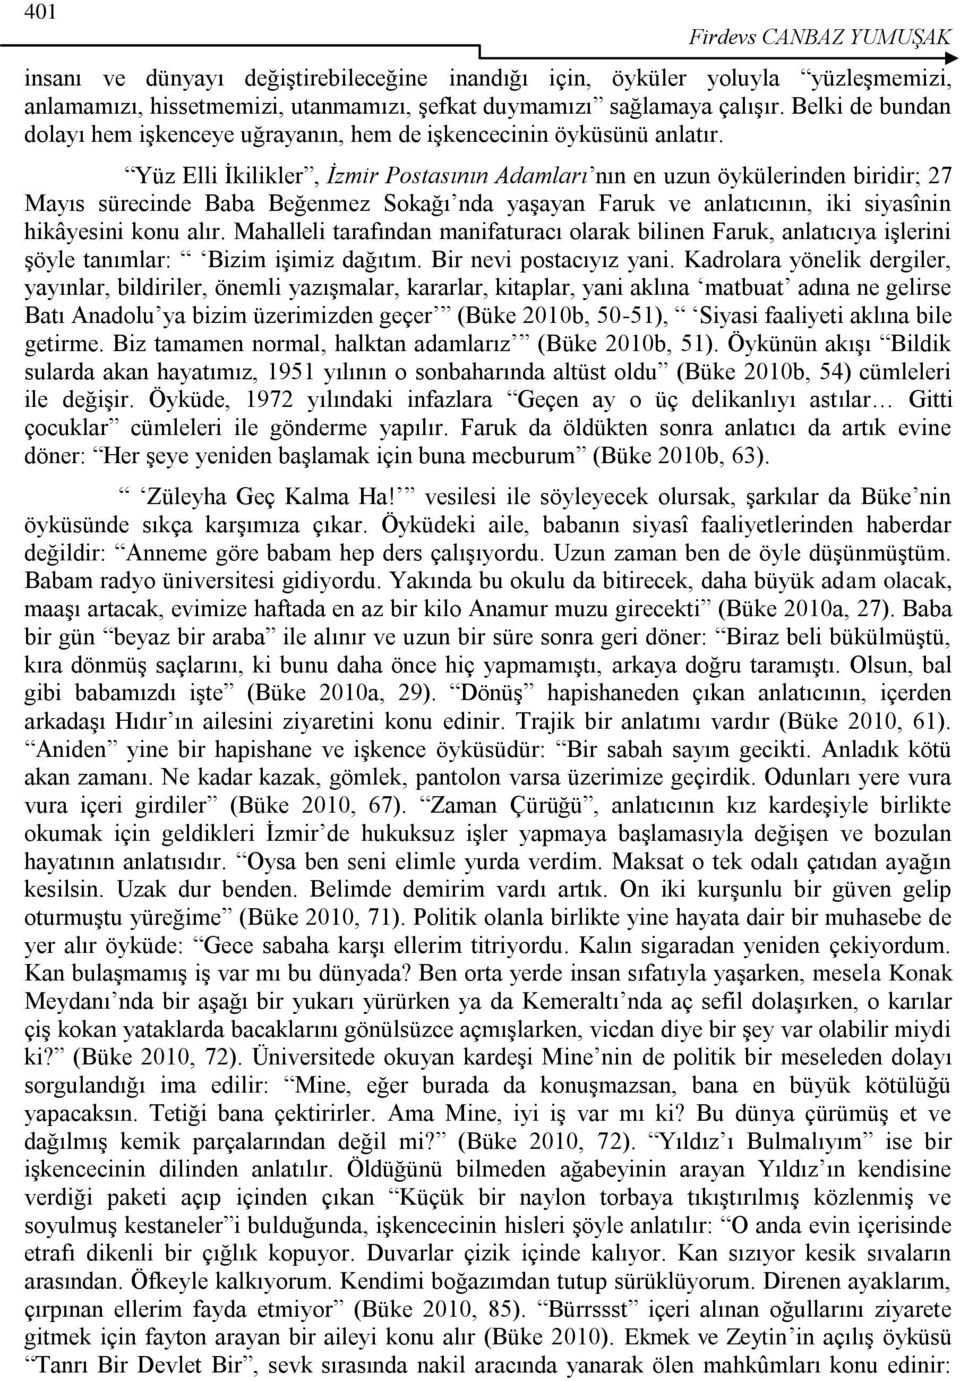 Yüz Elli Ġkilikler, İzmir Postasının Adamları nın en uzun öykülerinden biridir; 27 Mayıs sürecinde Baba Beğenmez Sokağı nda yaģayan Faruk ve anlatıcının, iki siyasînin hikâyesini konu alır.